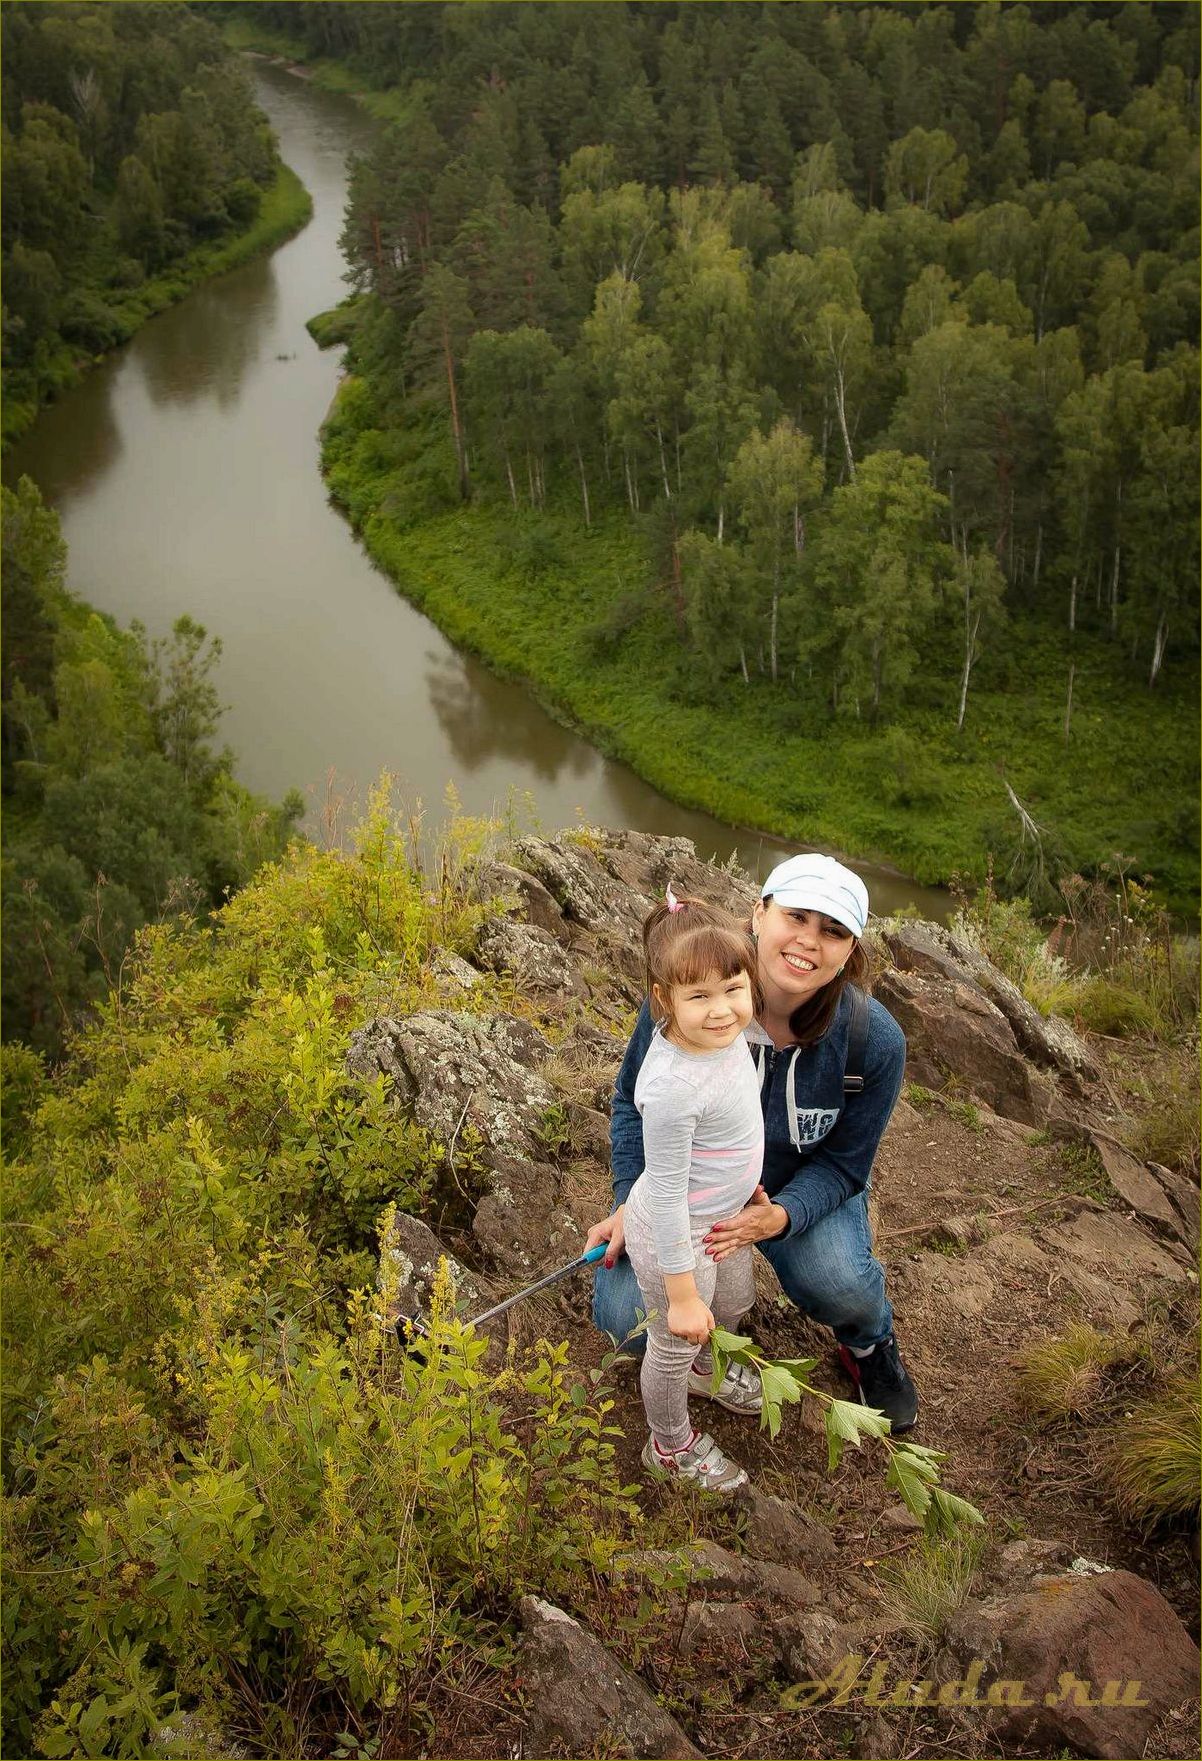 Бердские скалы — уникальная база отдыха в Новосибирской области, где смогут насладиться природой и активным отдыхом